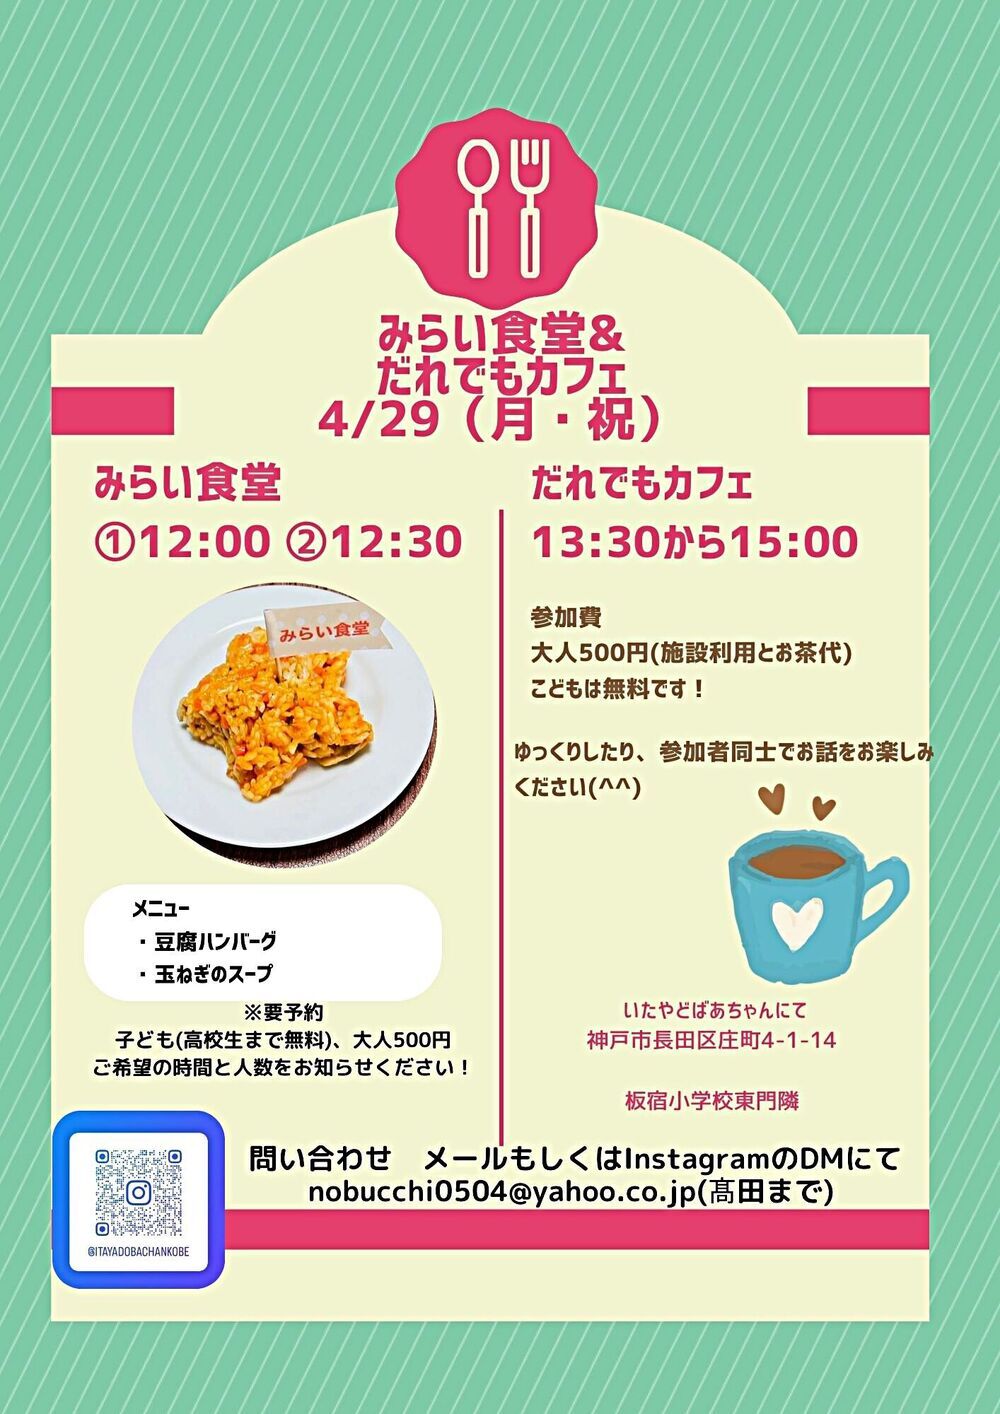 4/29 Itayado Vovó Mirai Shokudo, Qualquer Café